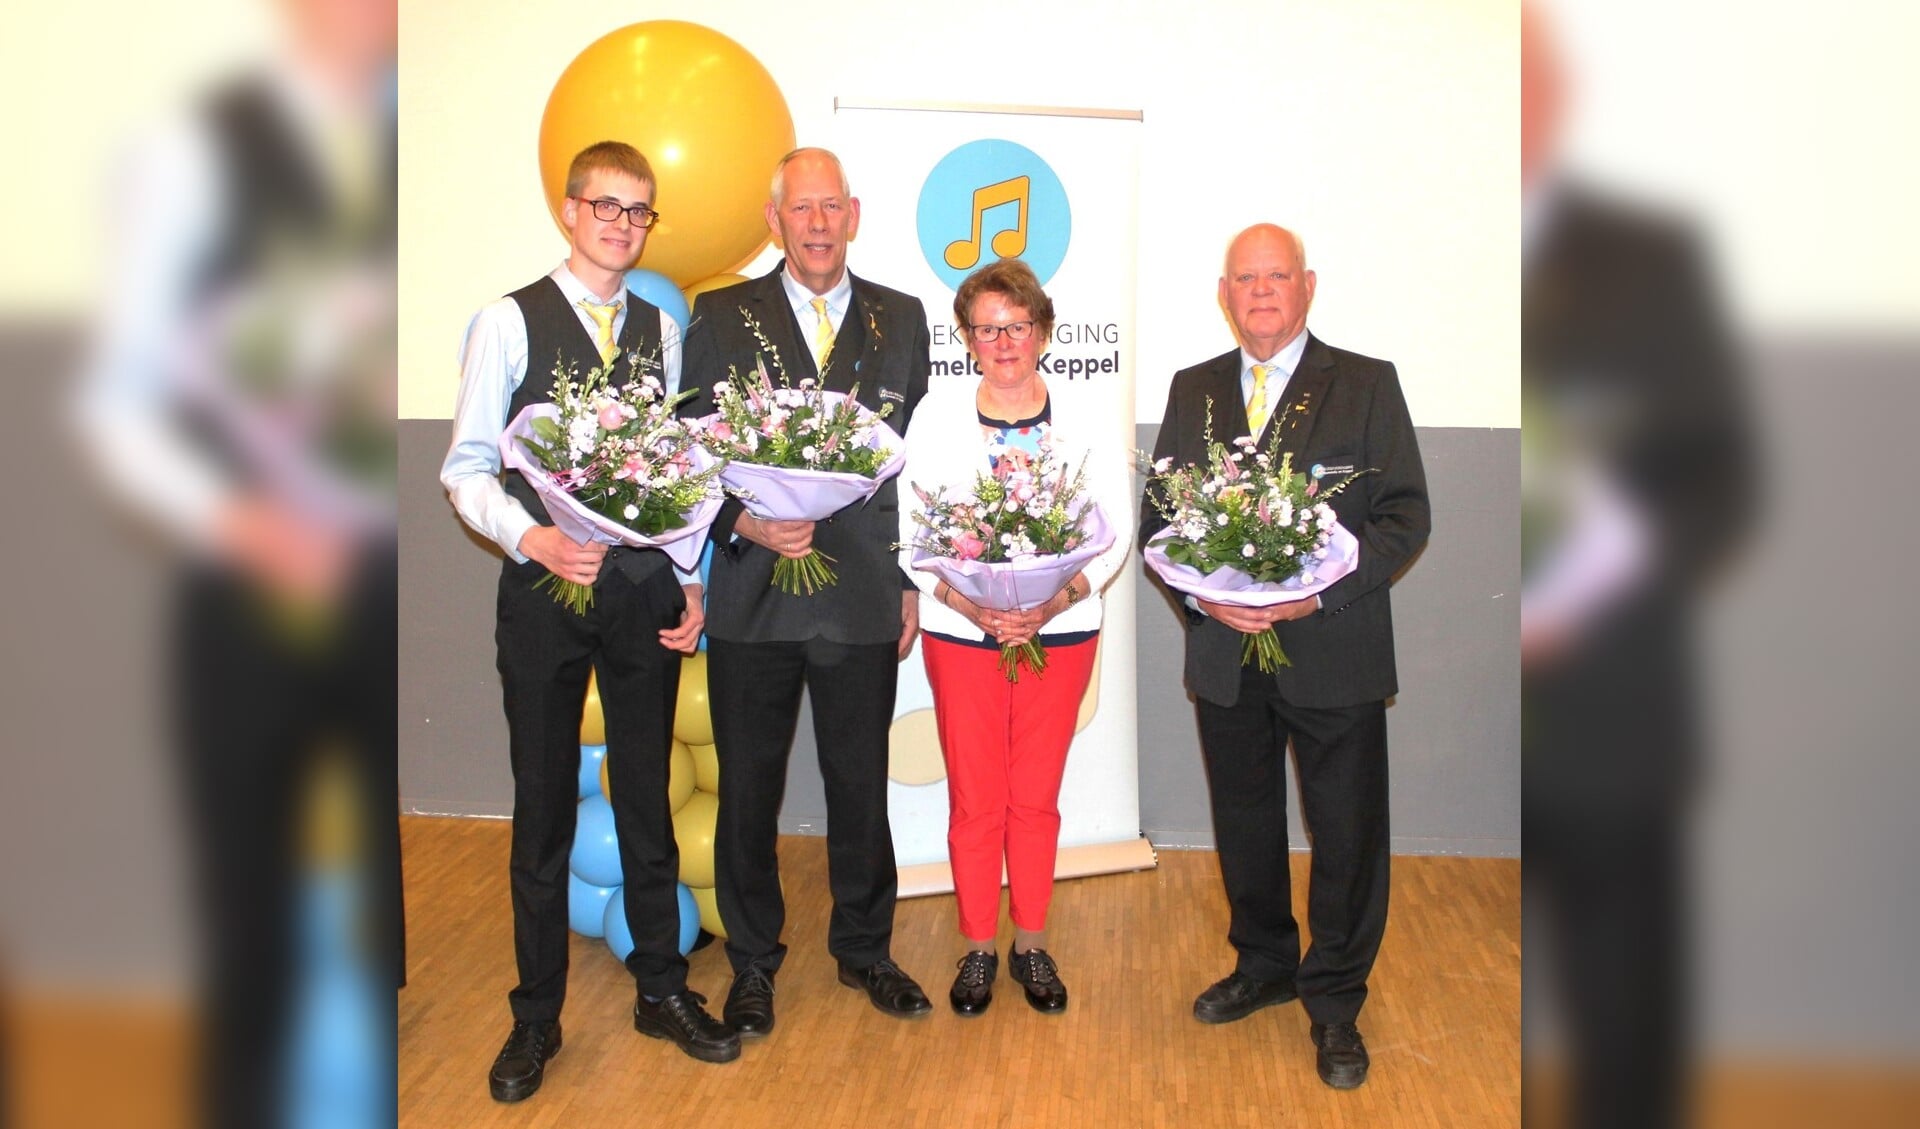 V.l.n.r.: De jubilarissen Teun van Binsbergen, Jan Tiecken, Henny Boesveld en Freek Jolink. Foto: PR